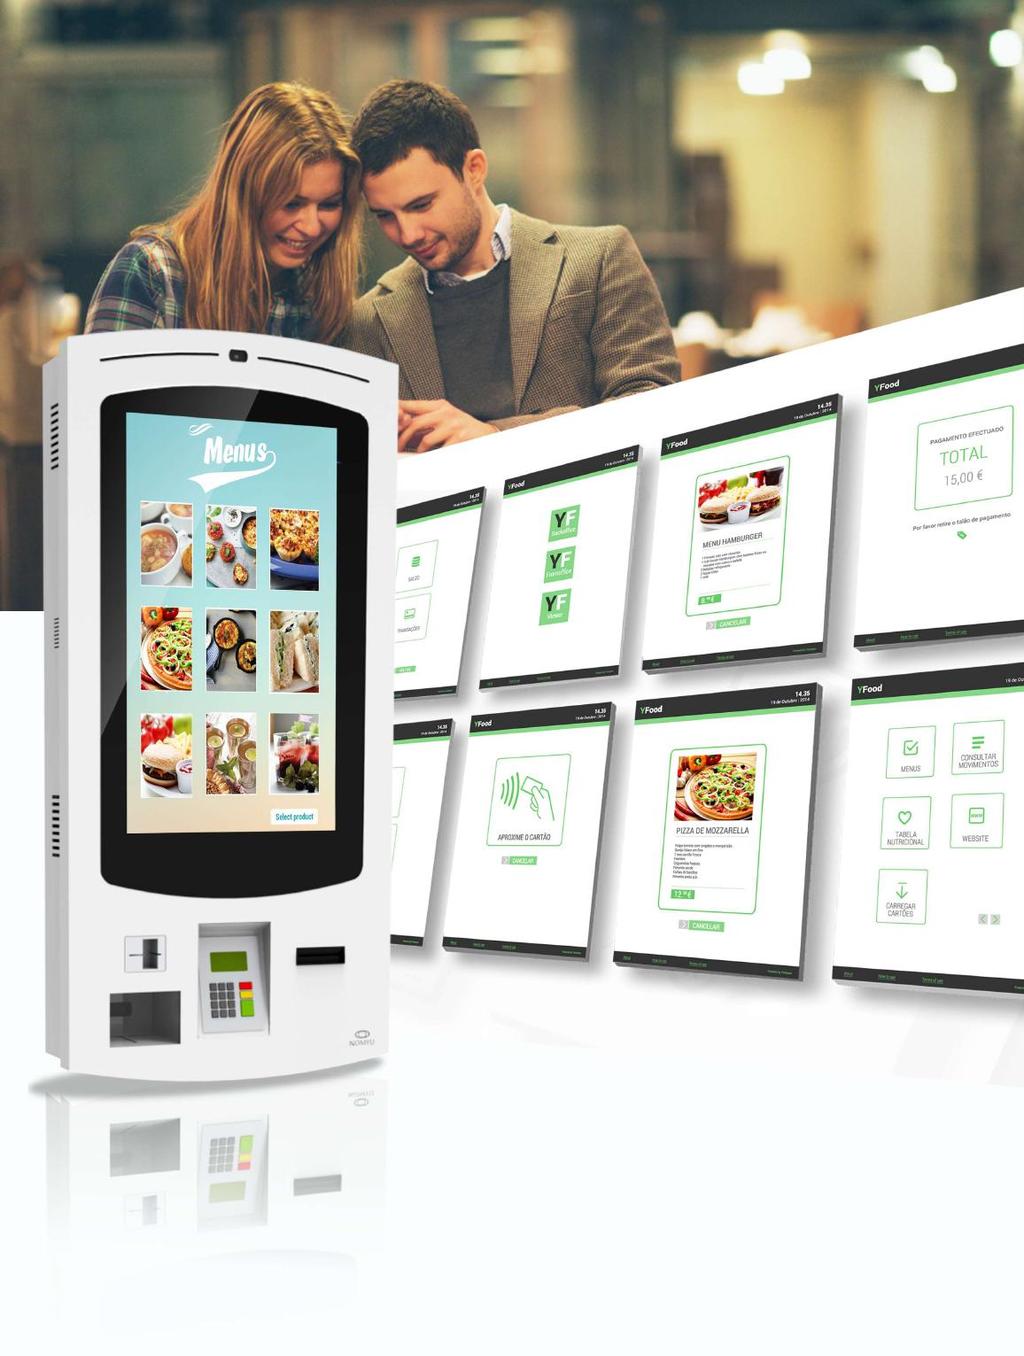 Software Interactivo (Nomyu - versão parede/pagamentos) Este tipo de software s em combinação com os quiosques de pagamentos são a opção perfeita para o self-sevice nos restaurantes e fast food